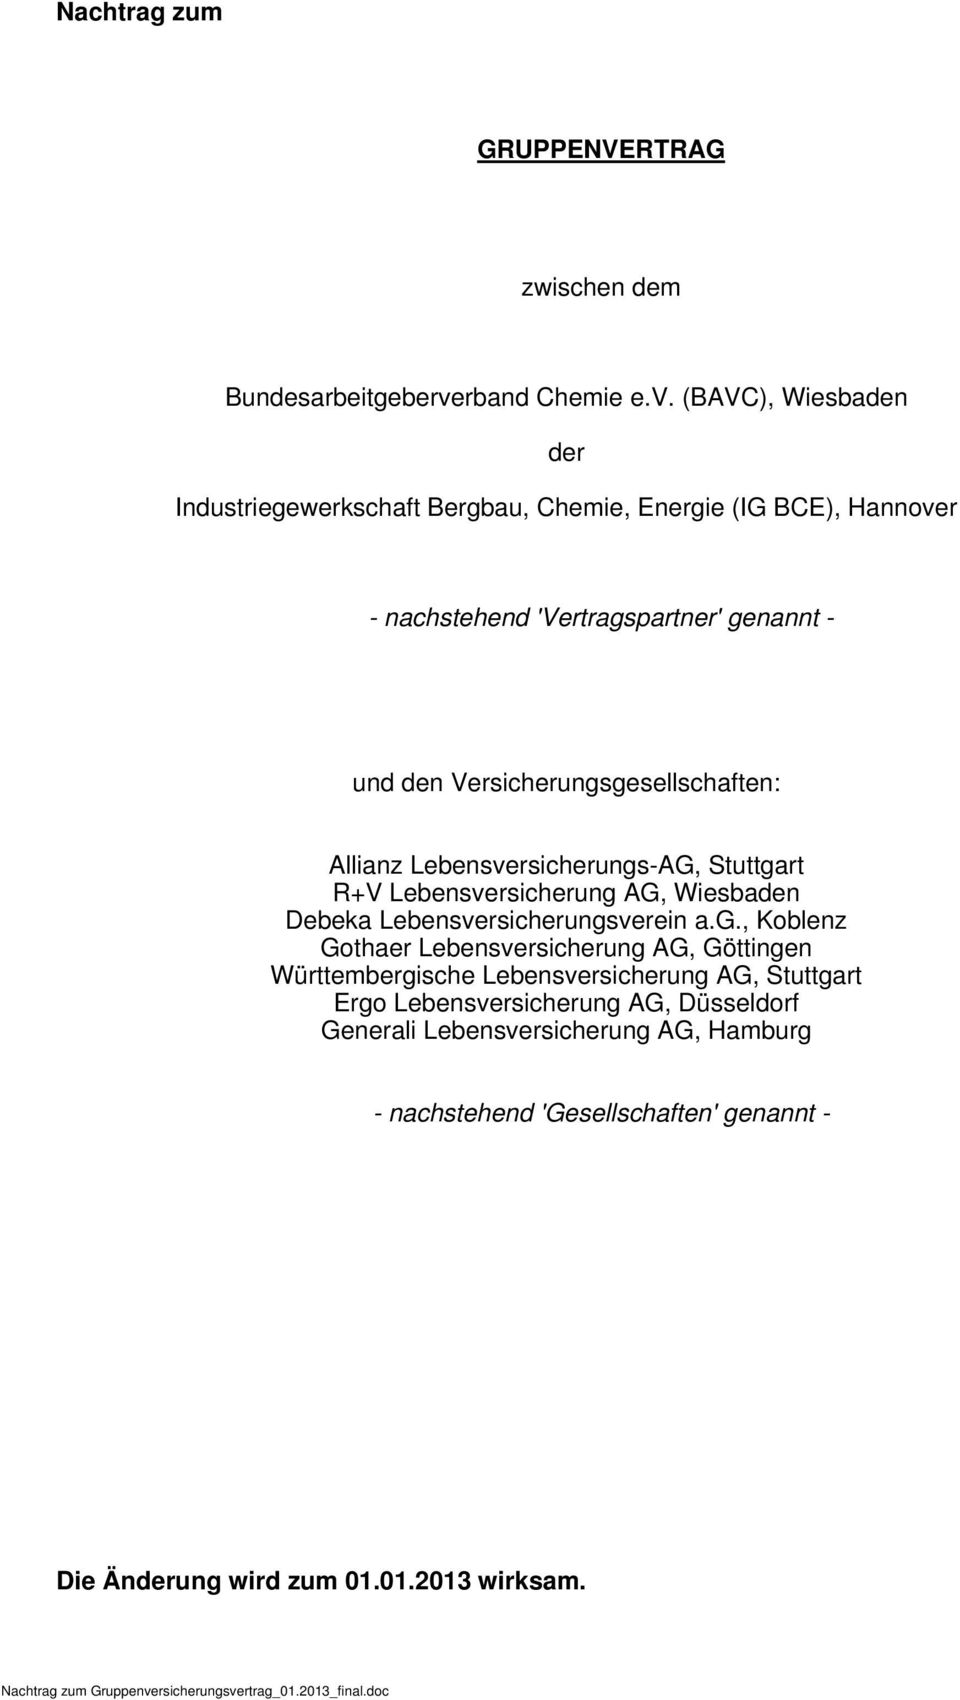 (BAVC), Wiesbaden der Industriegewerkschaft Bergbau, Chemie, Energie (IG BCE), Hannover - nachstehend 'Vertragspartner' genannt - und den Versicherungsgesellschaften: